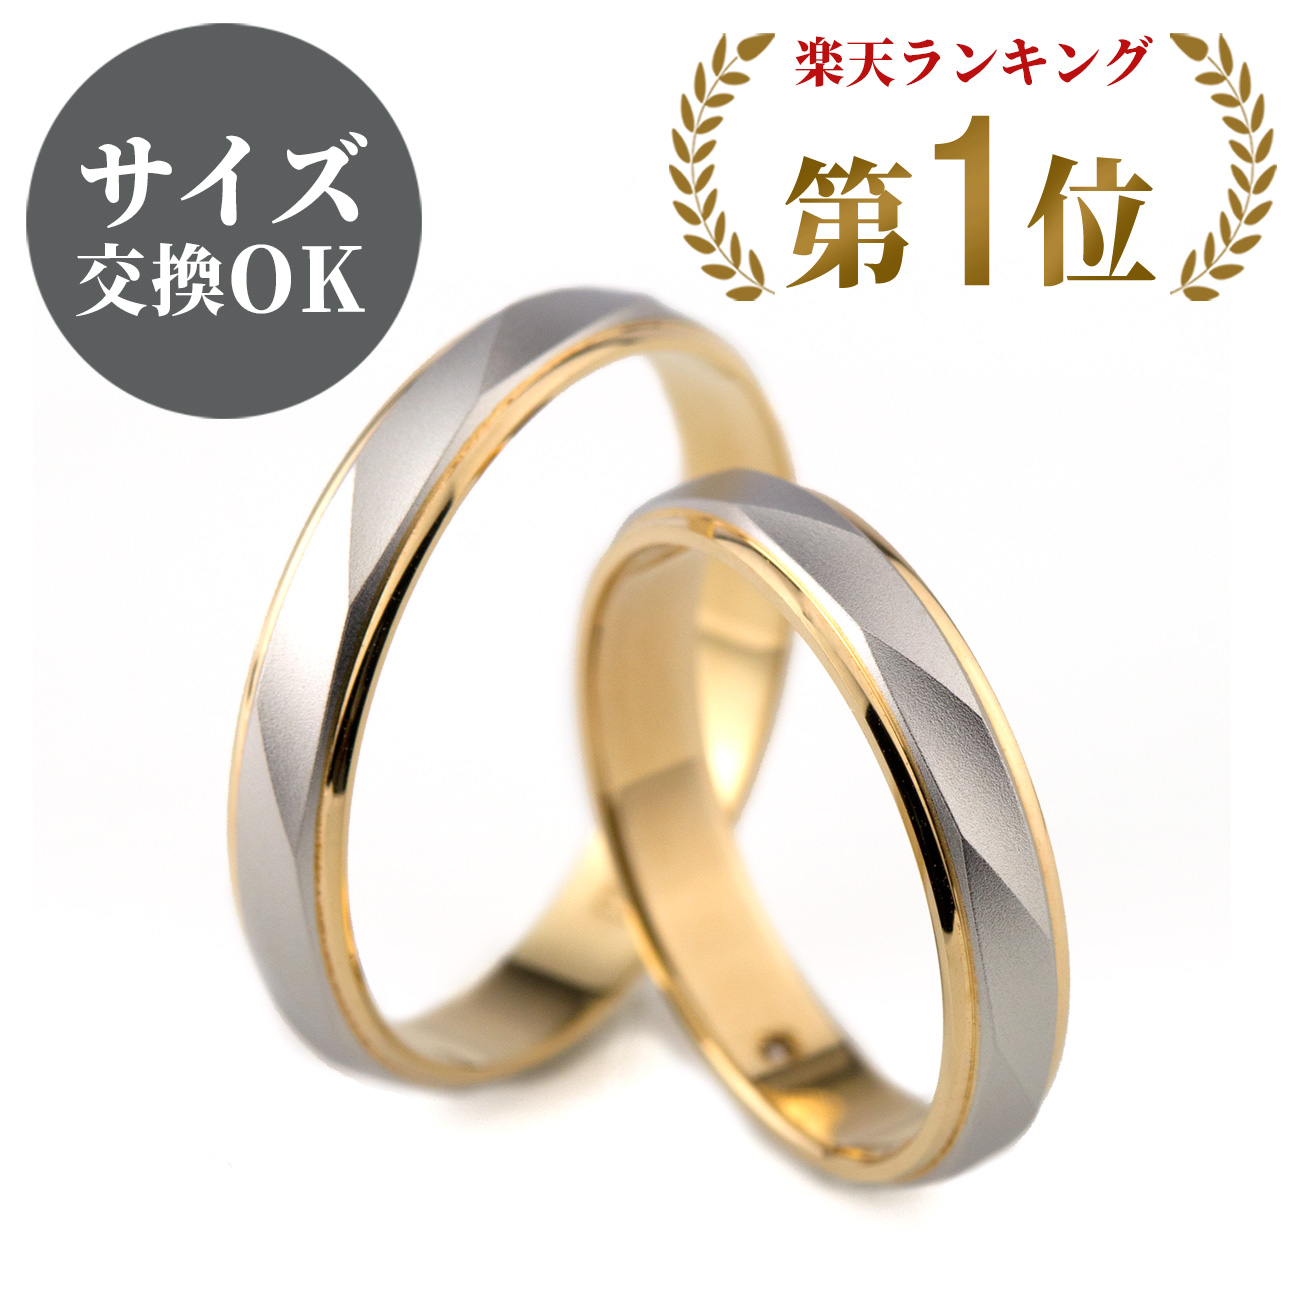 楽天市場】結婚指輪 マリッジリング プラチナ900/18金ゴールド サイズ 